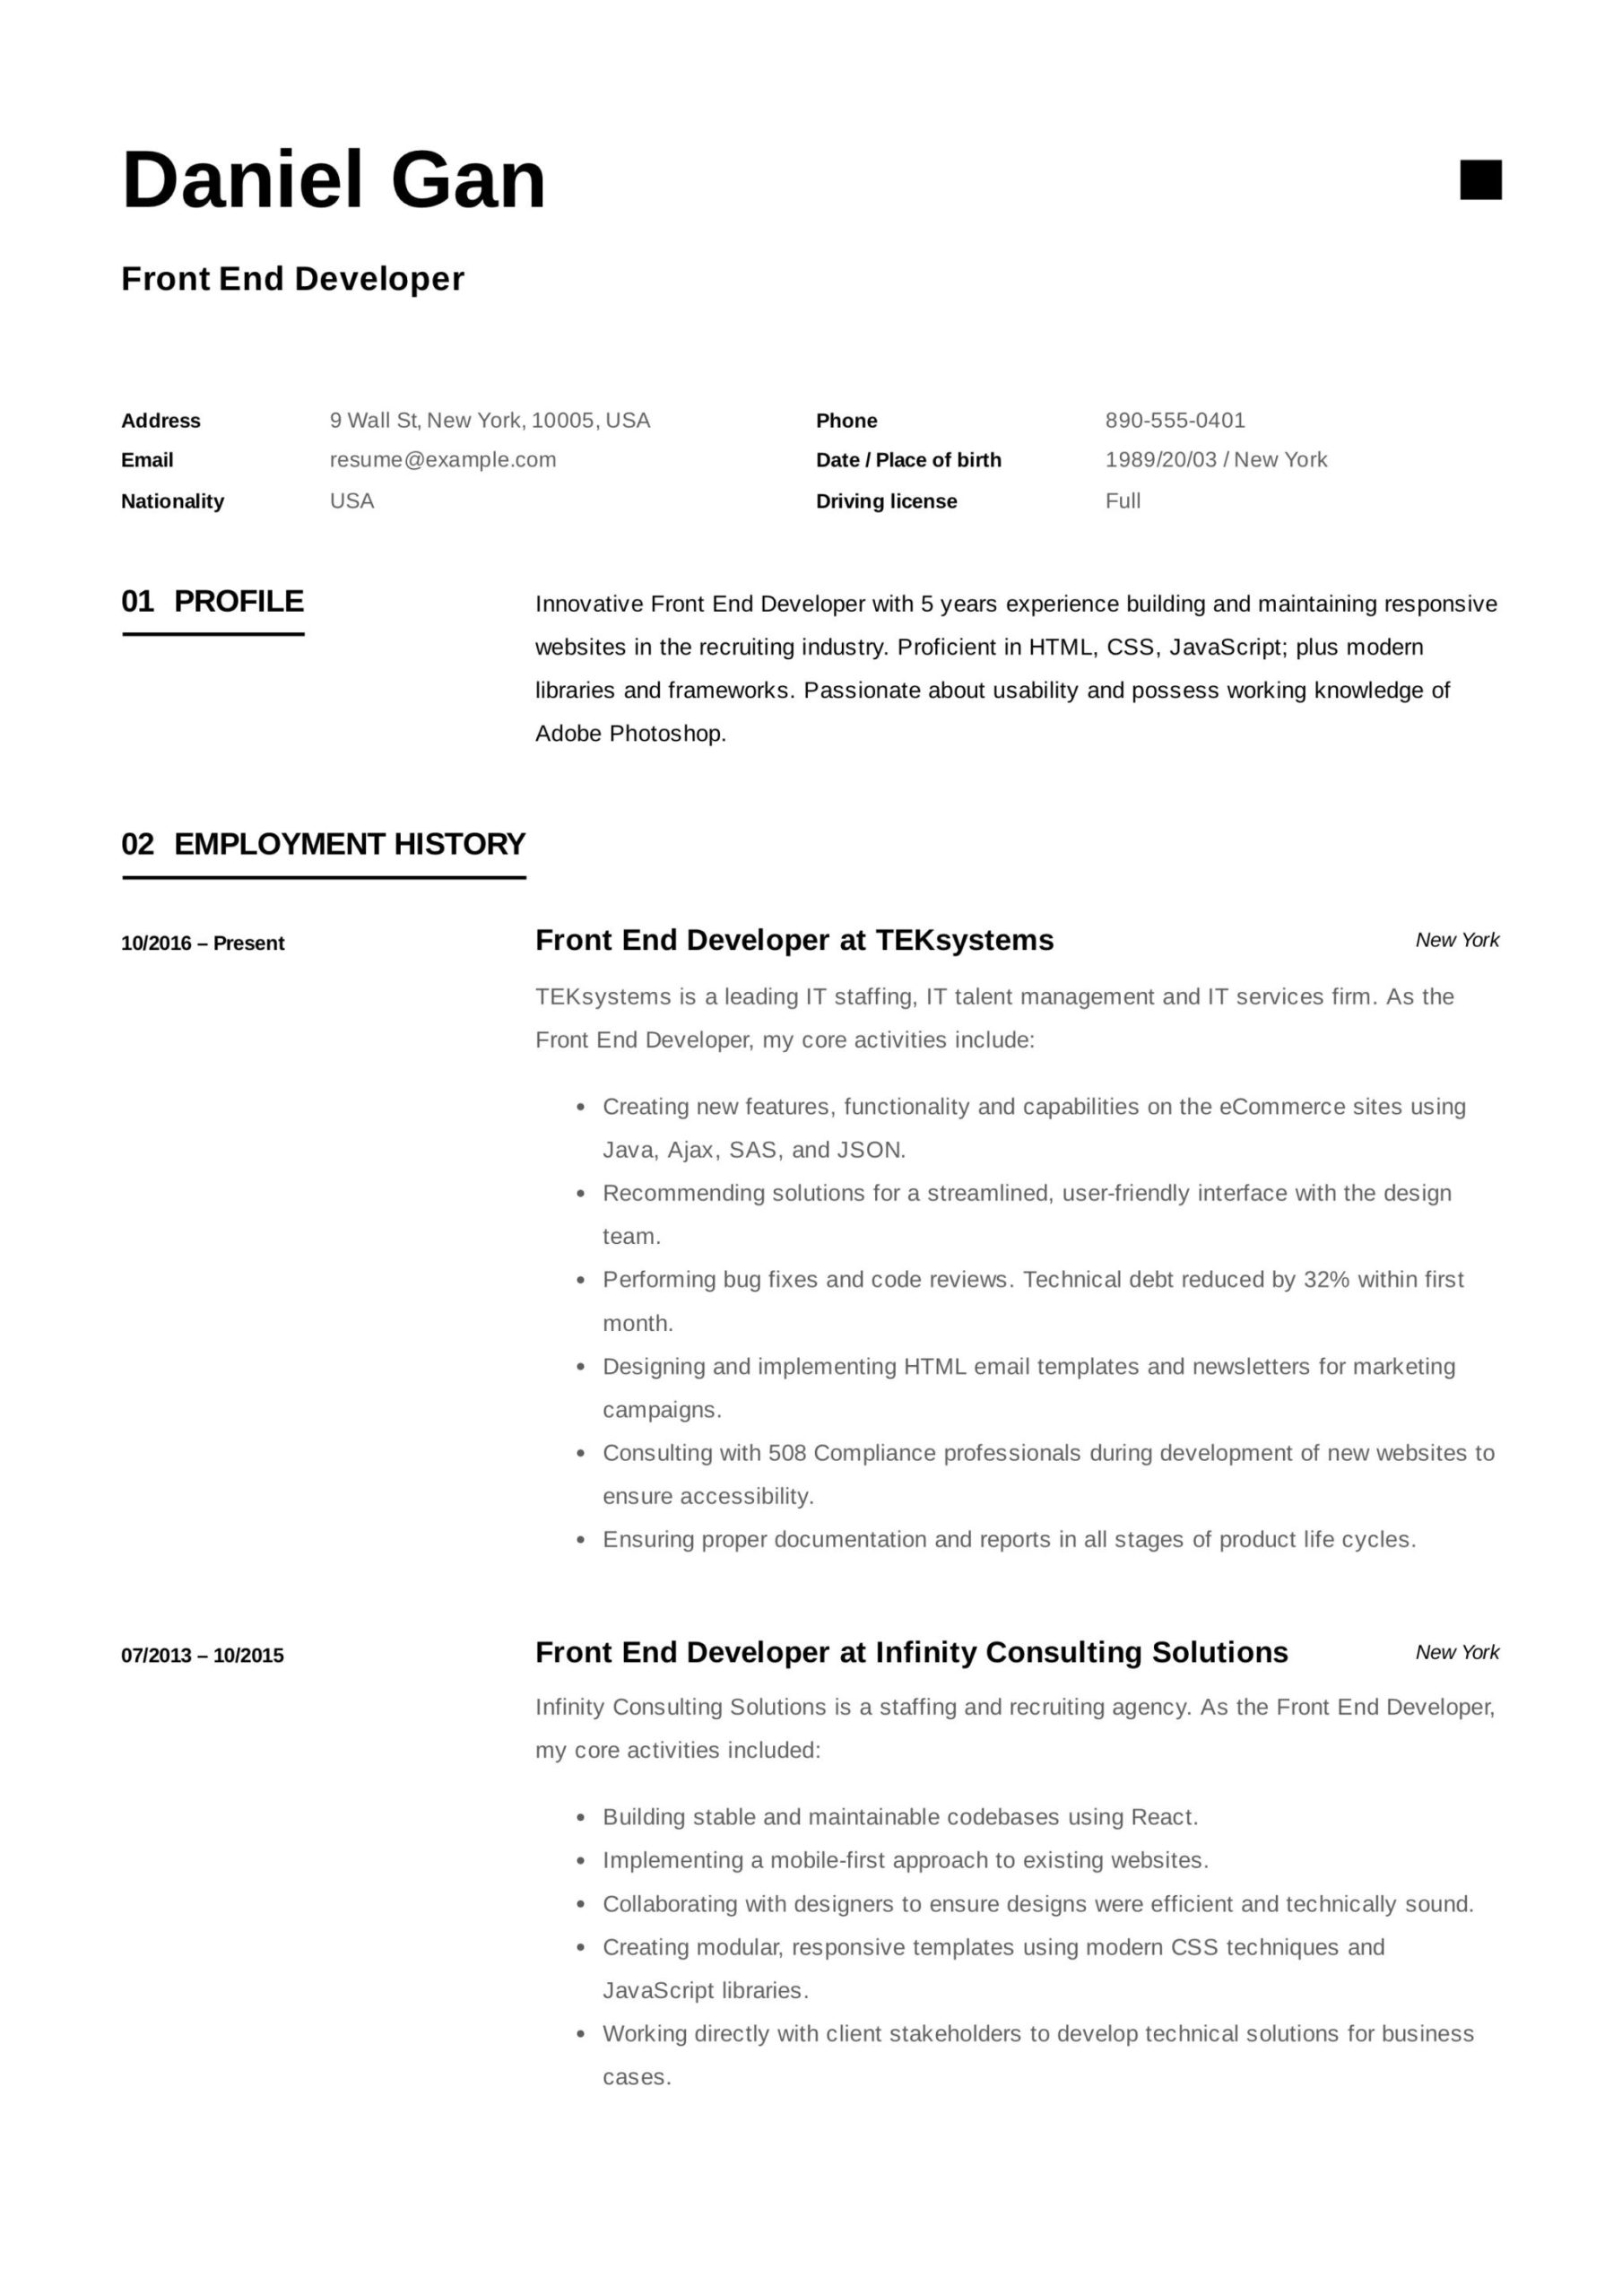 Sample Standard formatted Resume for Front End Developer 17 Front-end Developer Resume Examples & Guide Pdf 2022